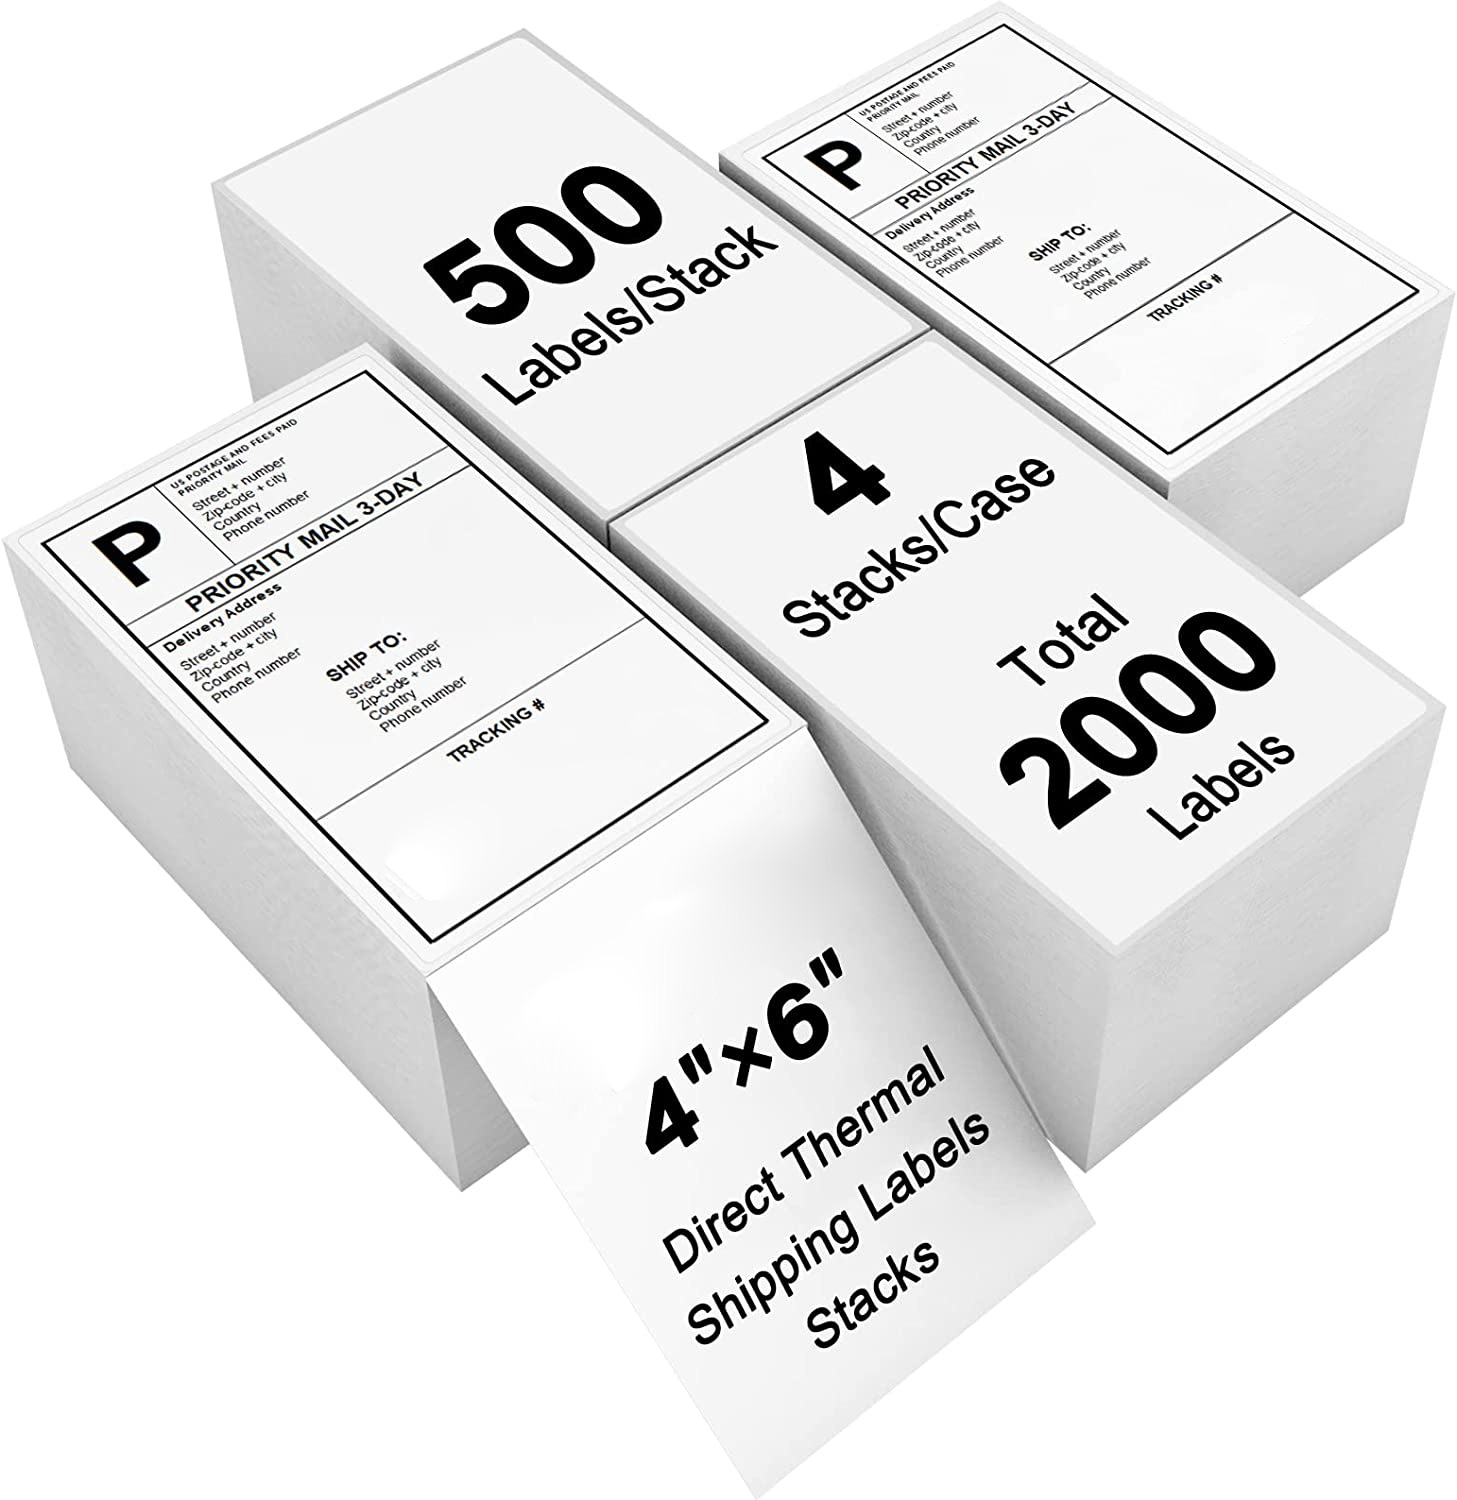 Etiquetas impressas de envio térmico de alta qualidade 4 x 6